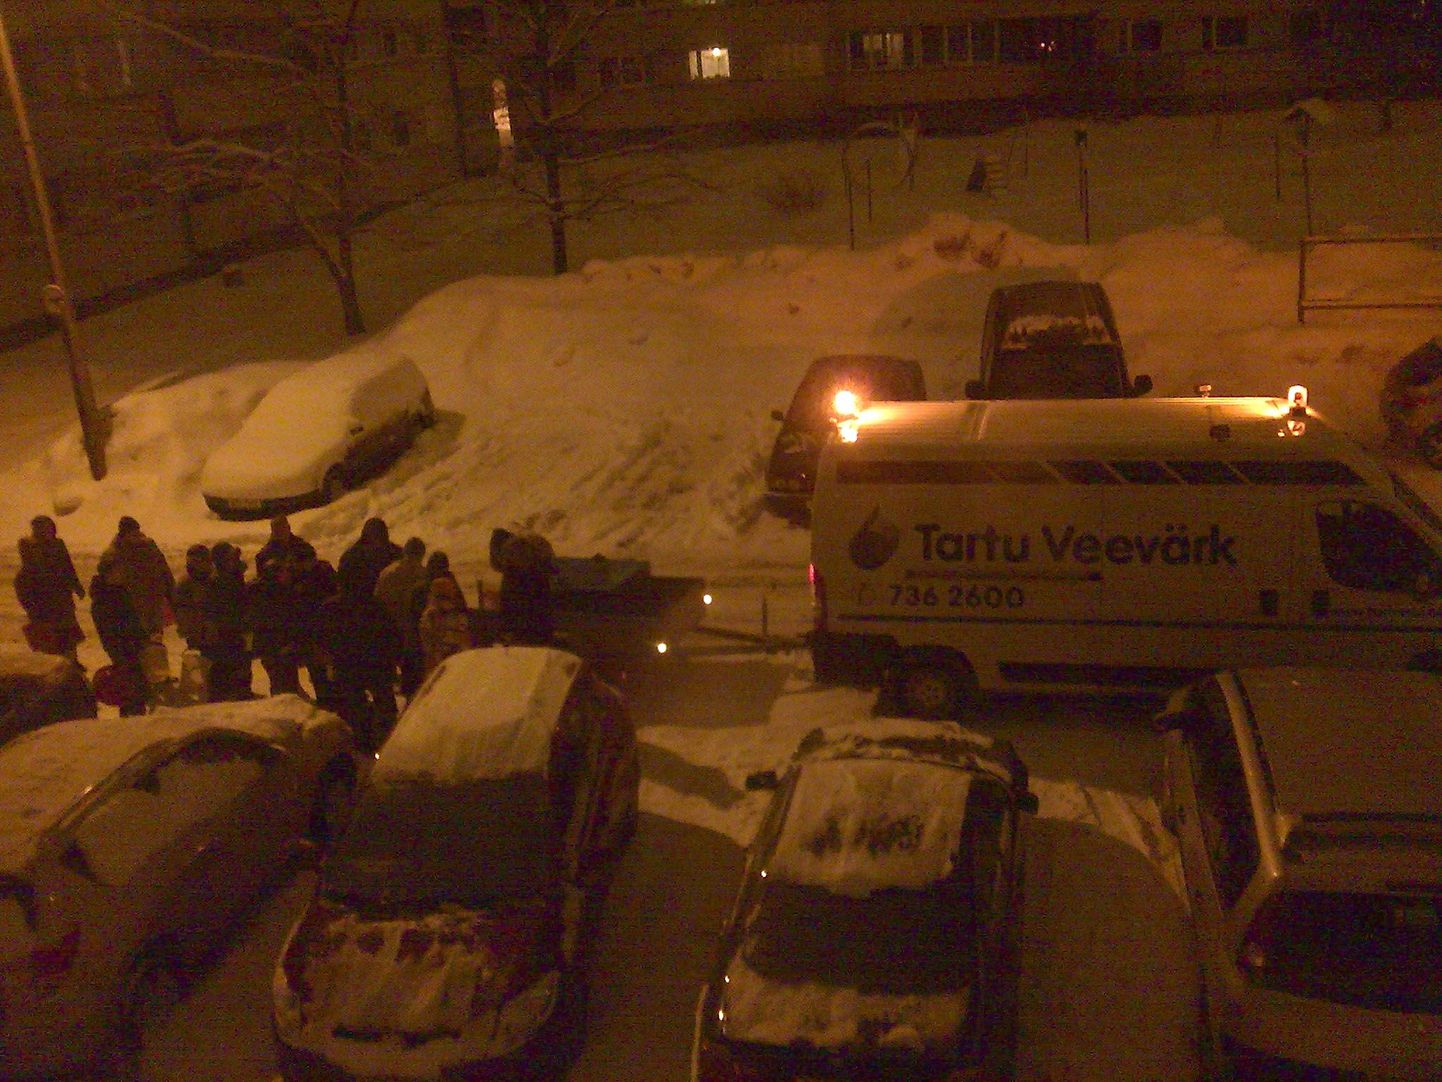 Neljapäeva õhtul kella kümne paiku jagas Tartu Veevärk Kaunase pst 25 ja 26 elanikele vett.